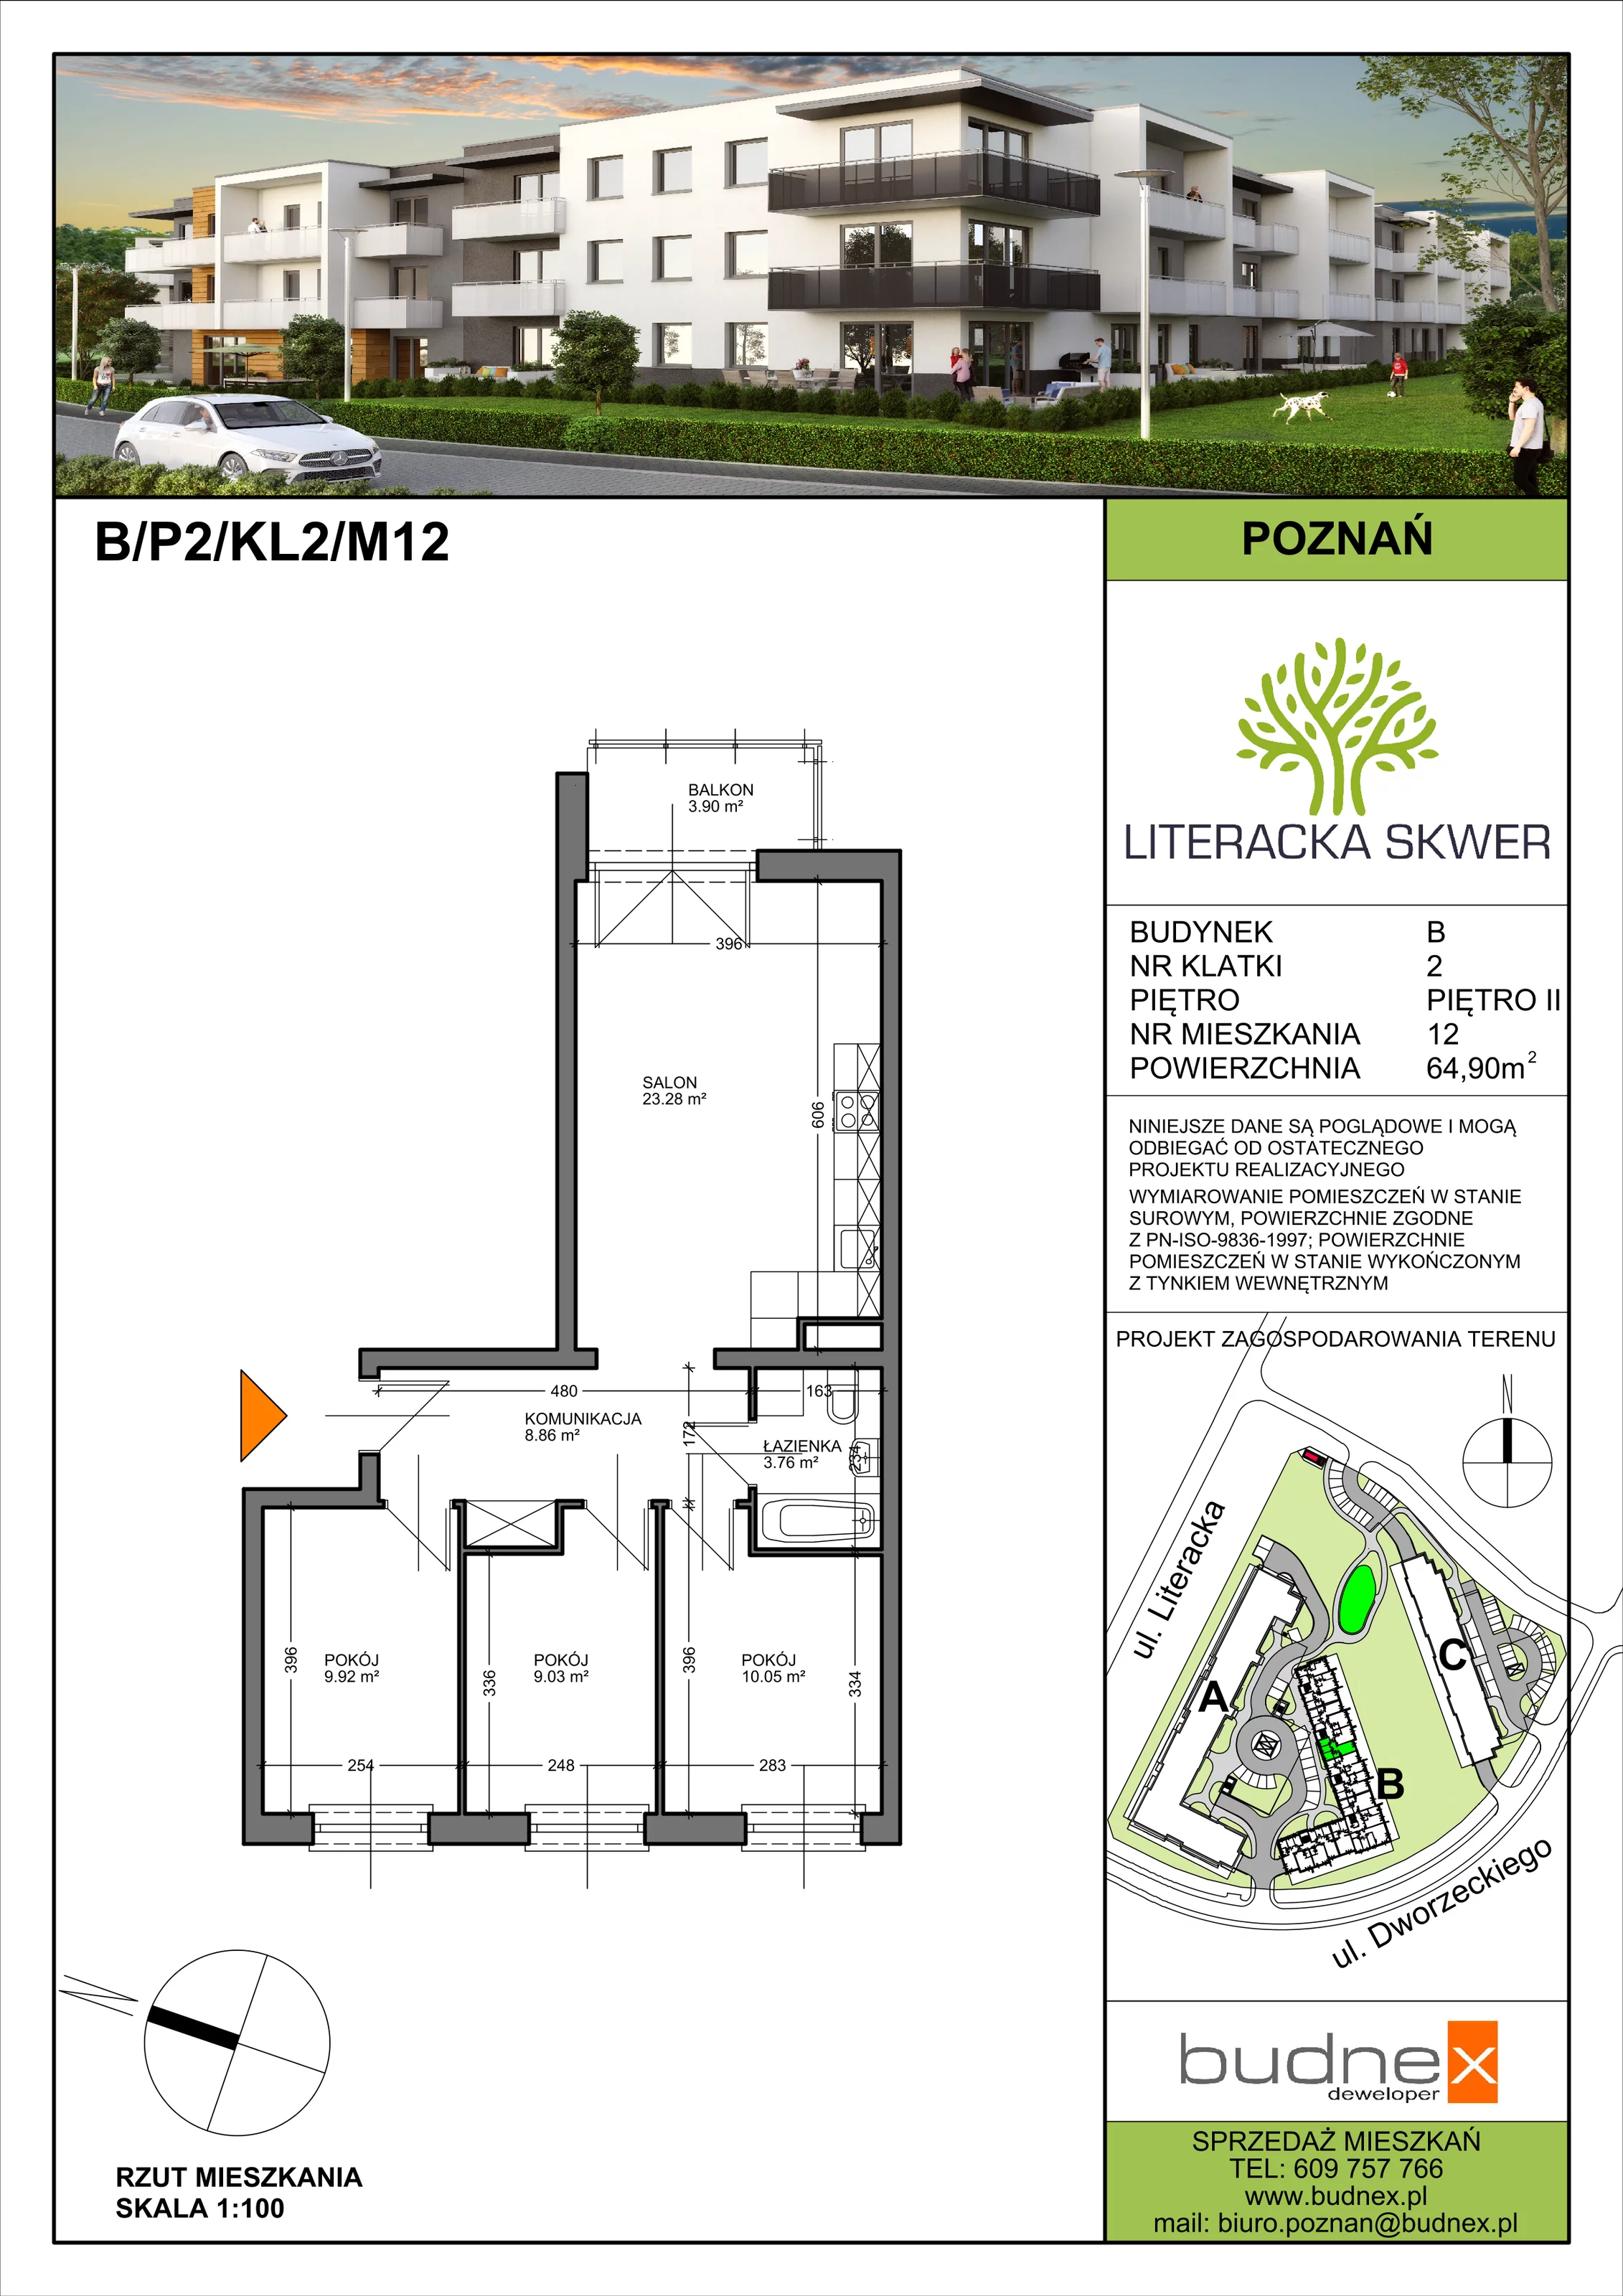 Mieszkanie 64,90 m², piętro 2, oferta nr 2/M12, Literacka Skwer - Etap B, Poznań, Strzeszyn, Strzeszyn, ul. Literacka